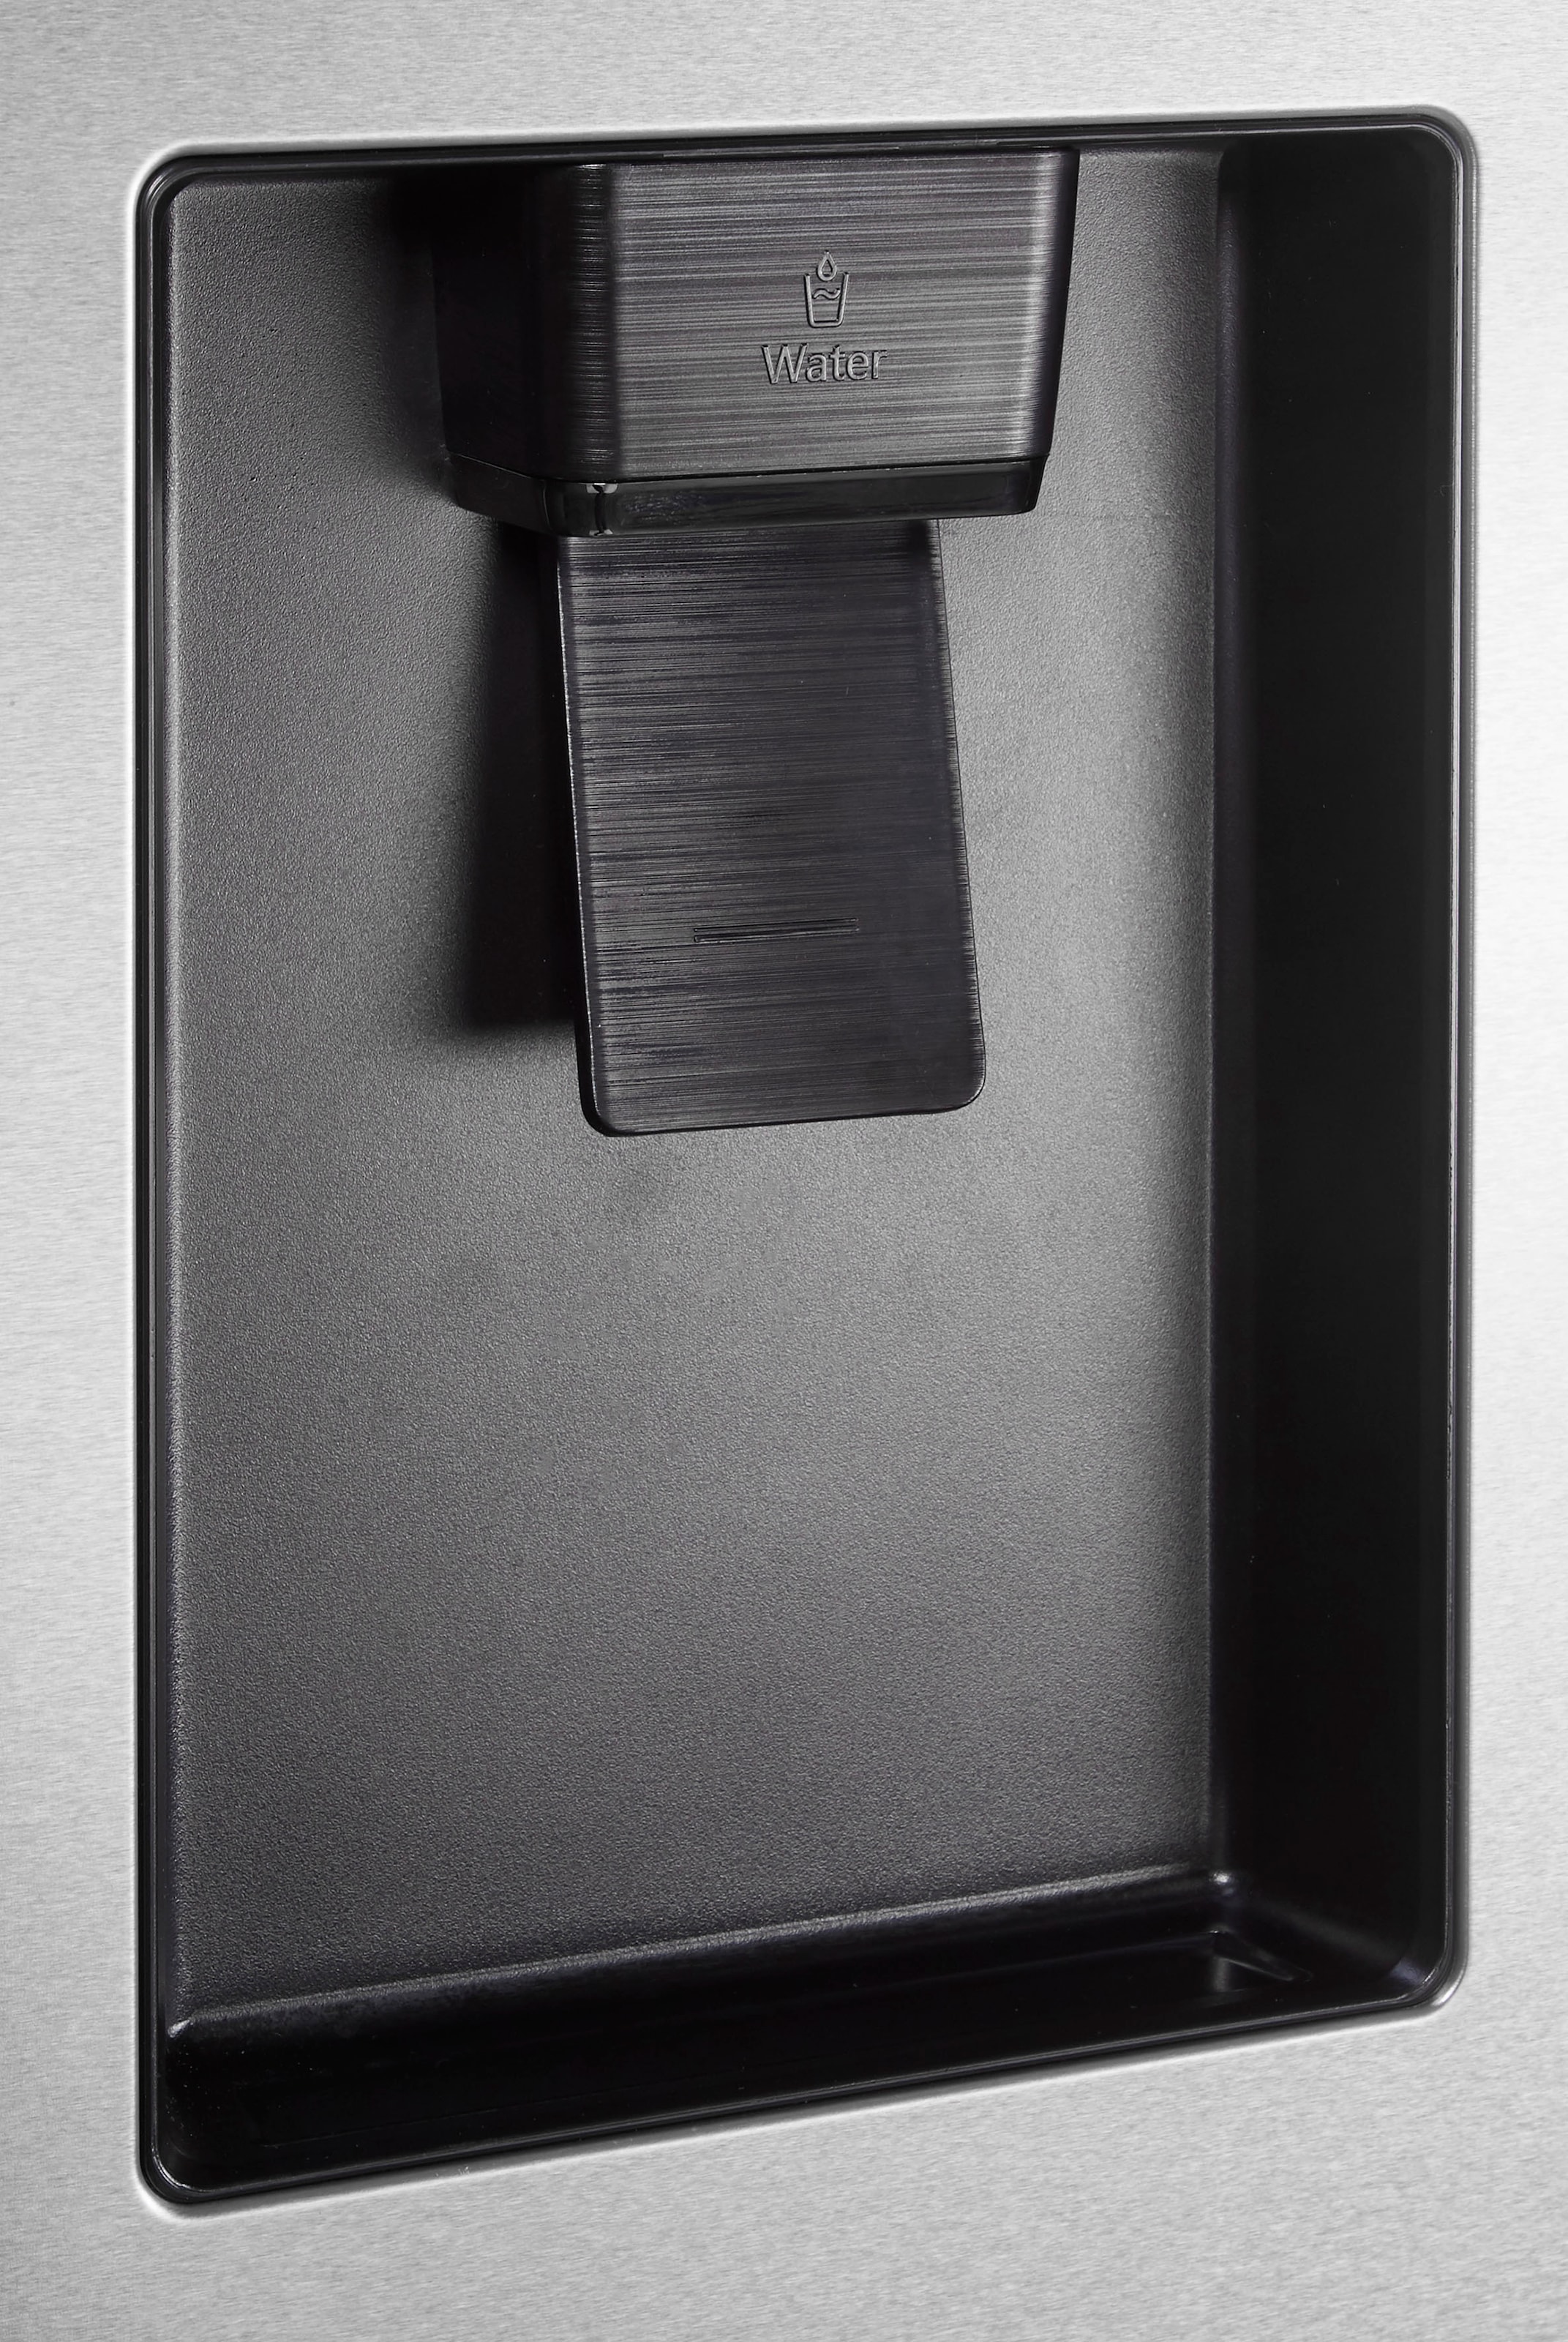 Hisense French Door »RF632N4«, RF632N4WFE, 200 cm hoch, 70 cm breit ➥ 3  Jahre XXL Garantie | UNIVERSAL